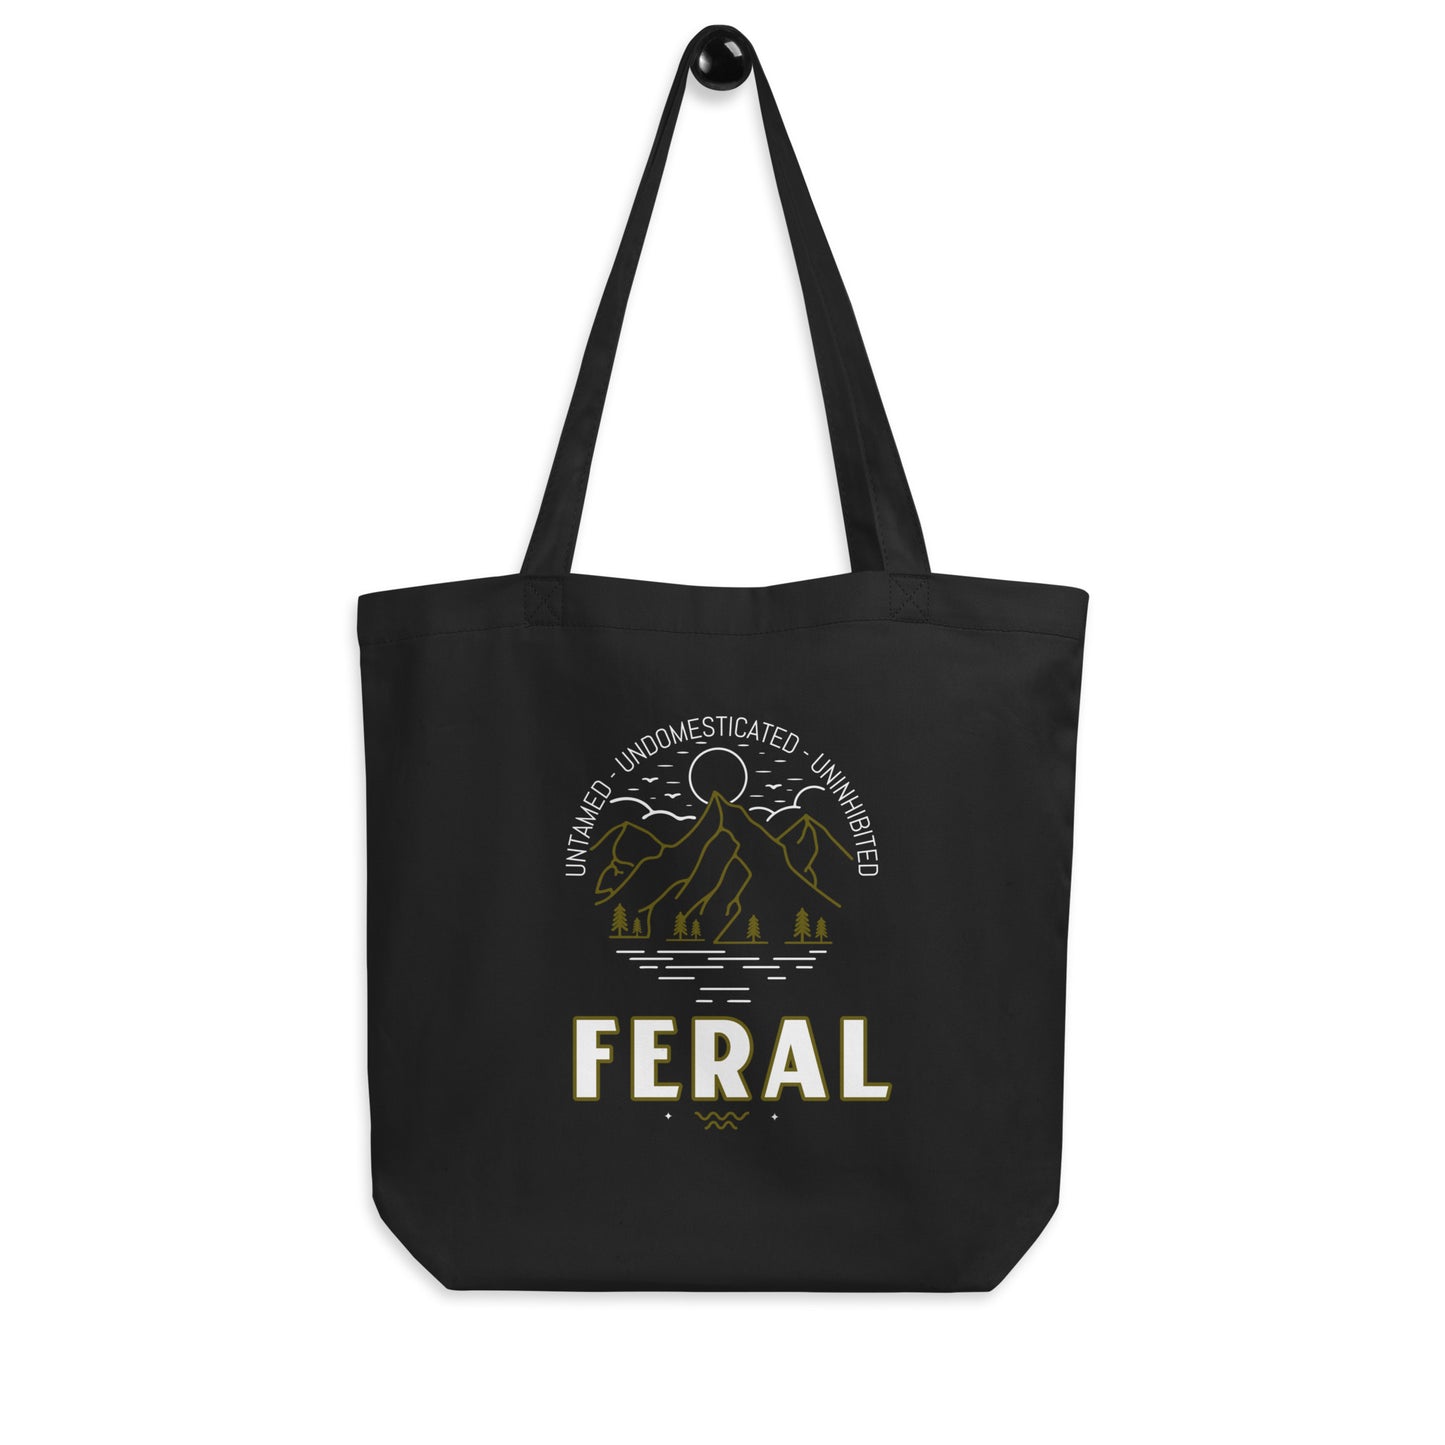 Feral - Description - Eco Tote Bag in Black